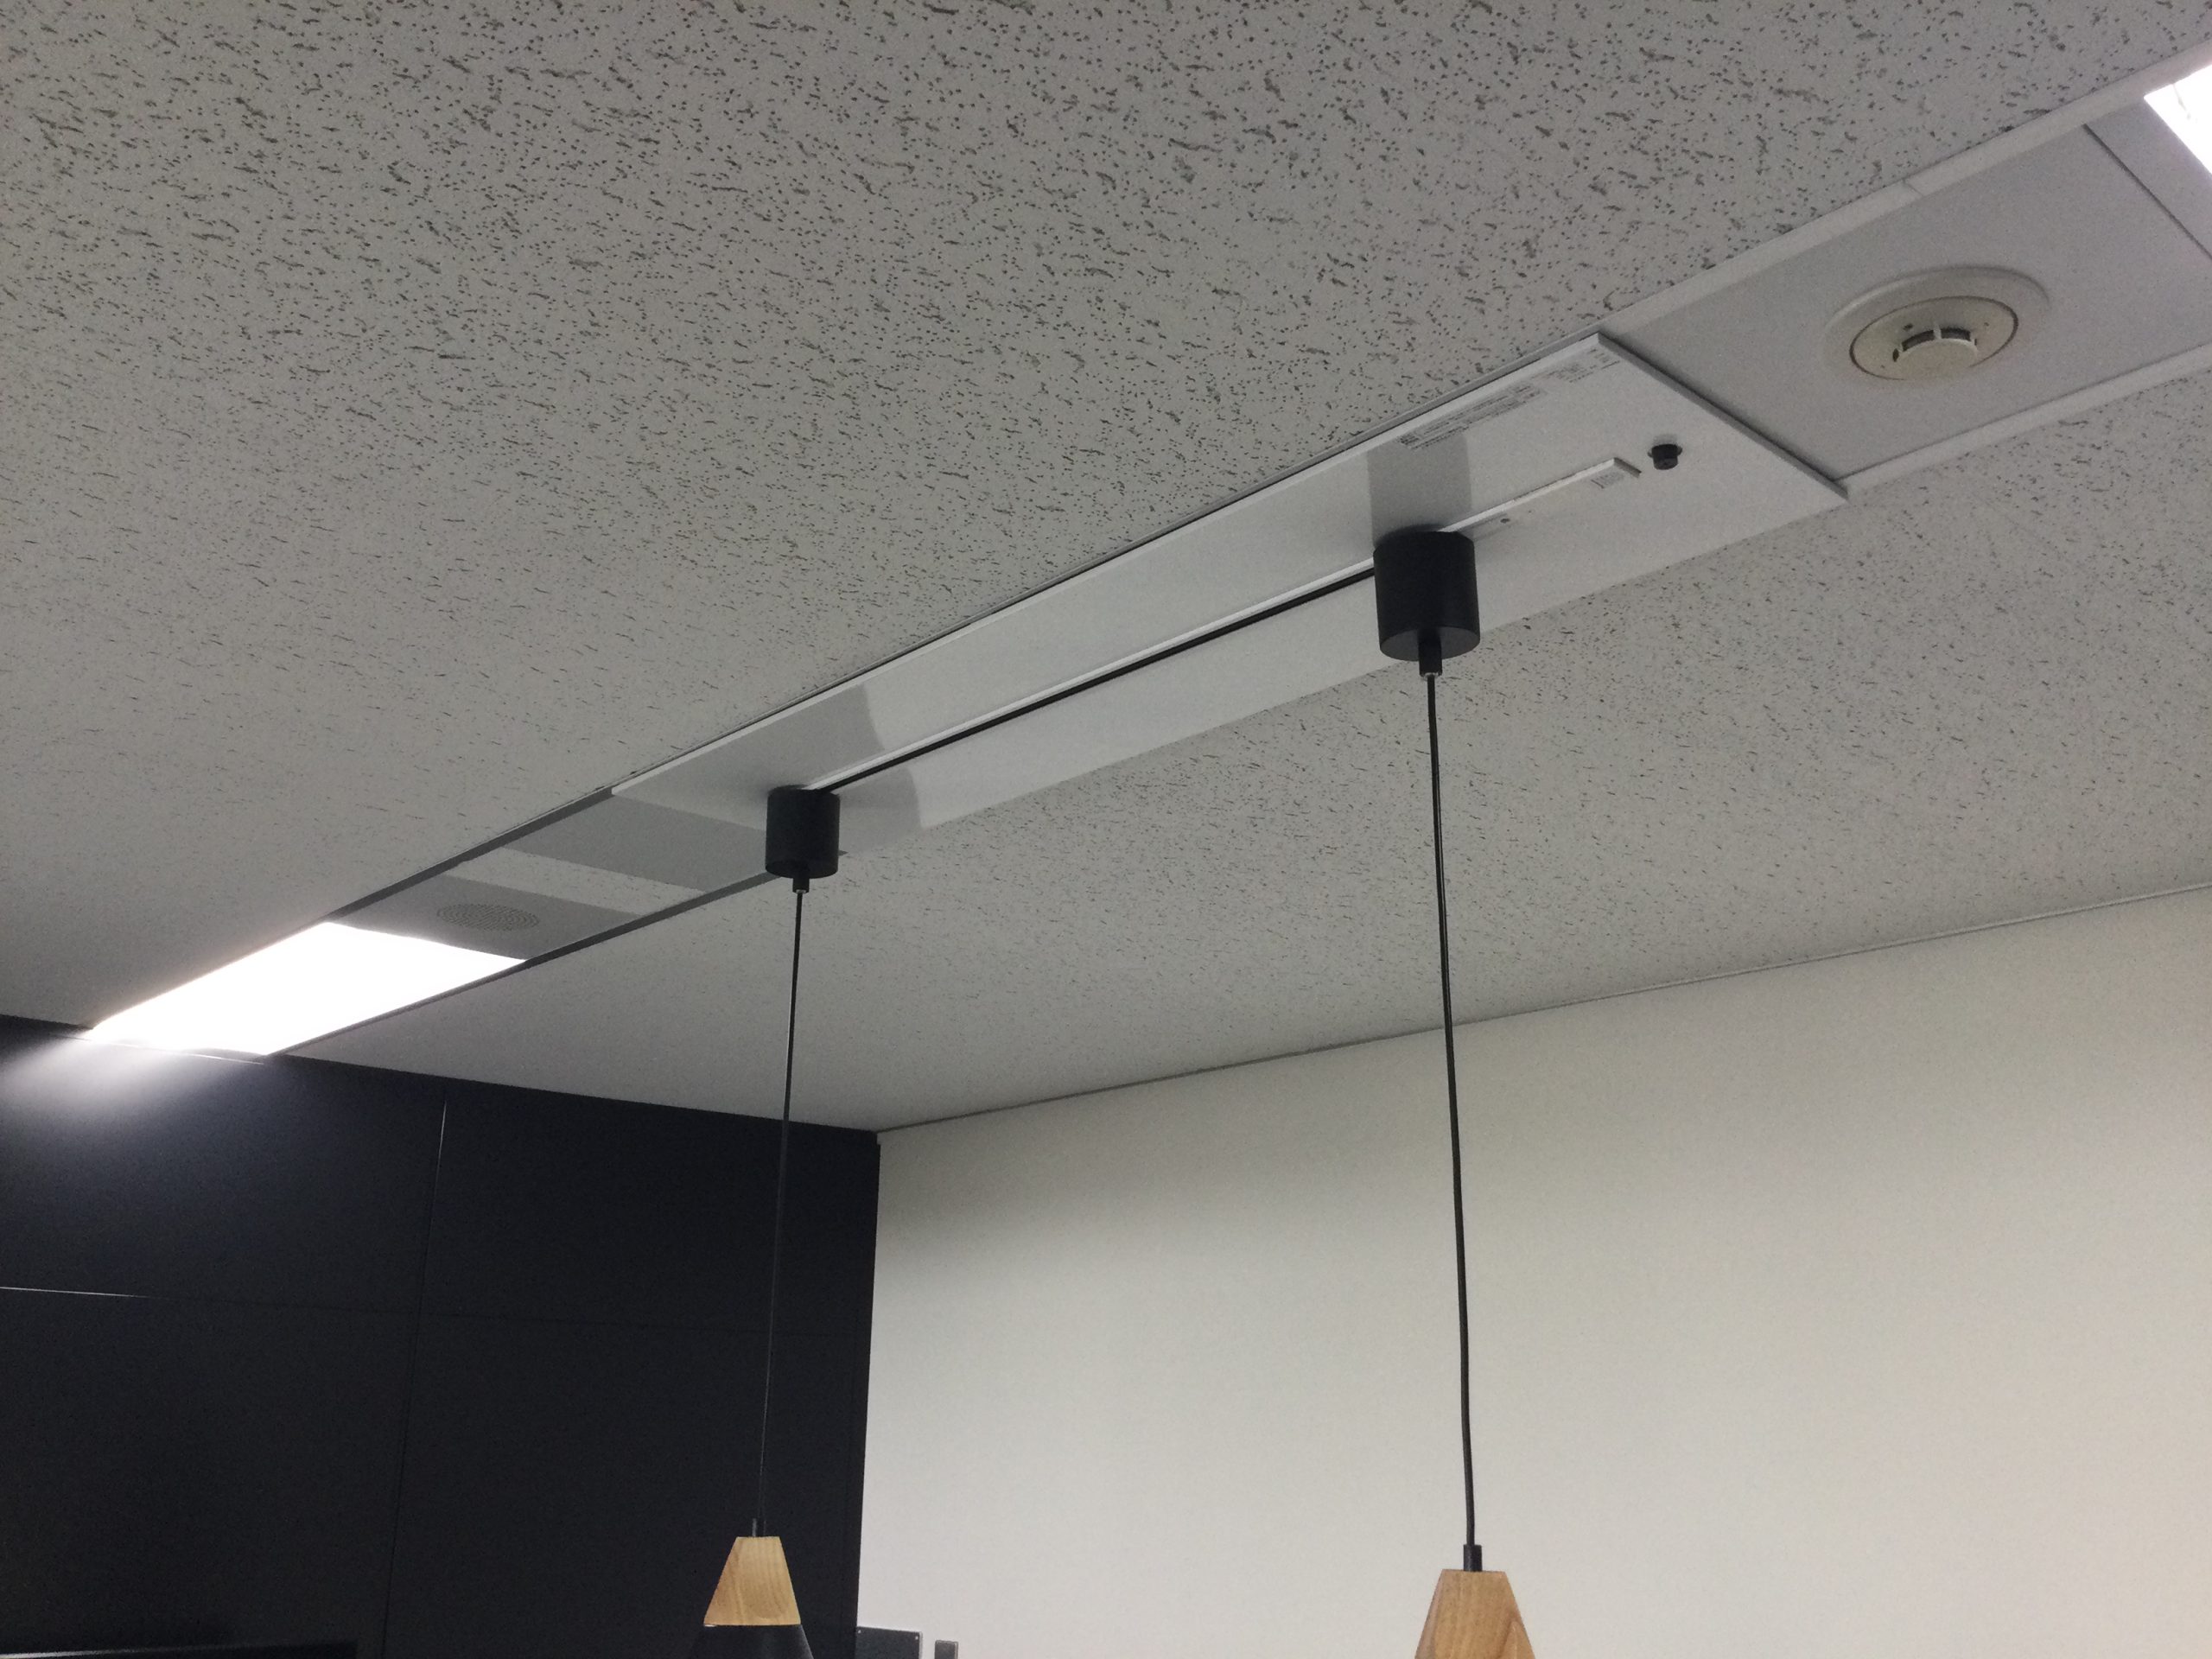 オフィスの蛍光灯システム天井をパナソニック製イージーアップ配線